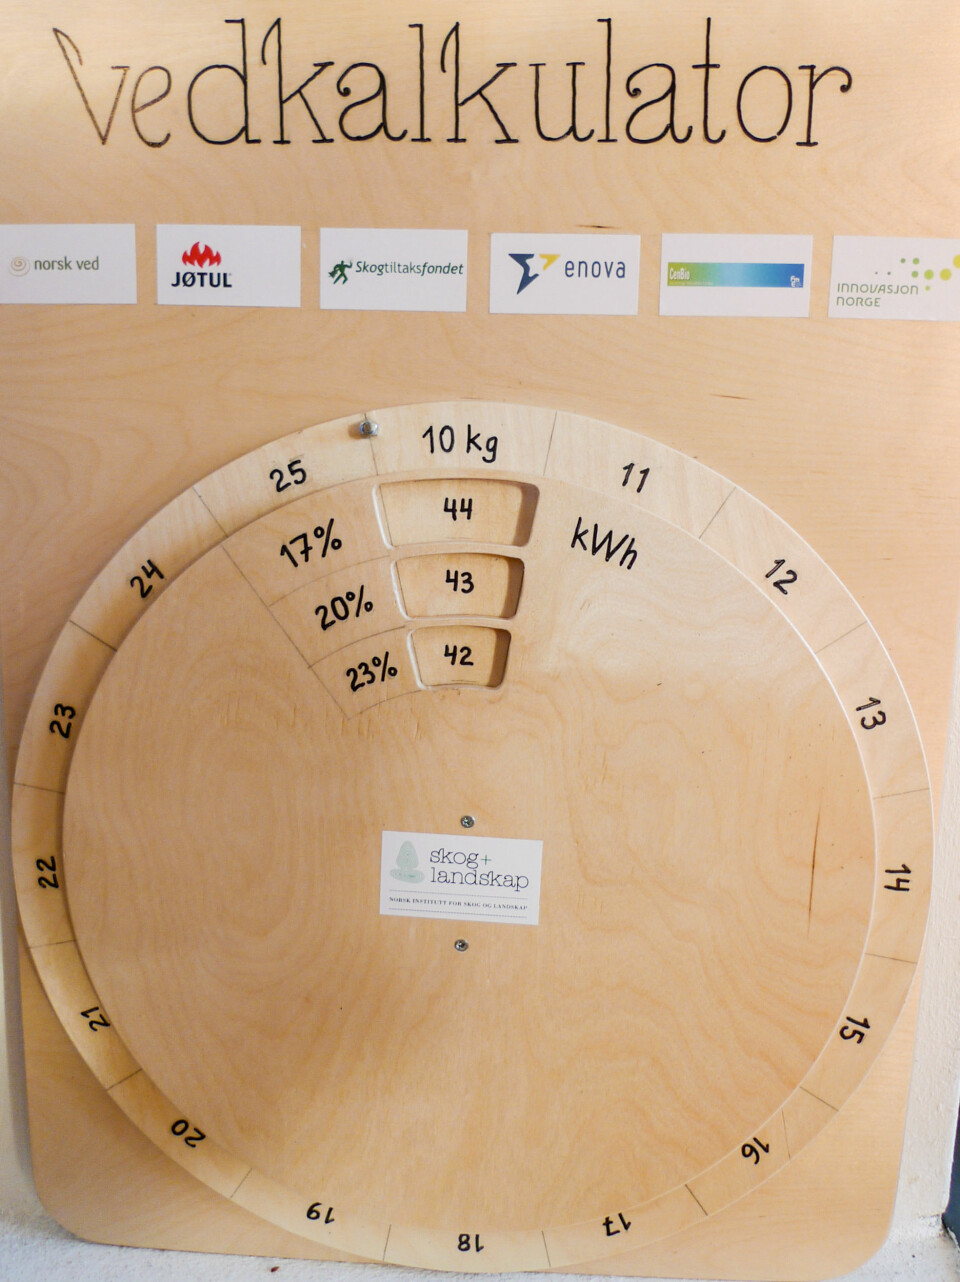 Kalkulator for beregning av energiinnhold i en småsekk med ved ut fra vekt og fuktighetsinnhold. Utviklet ved Skog og landskap. (Foto: Eirik Nordhagen / Skog og landskap)